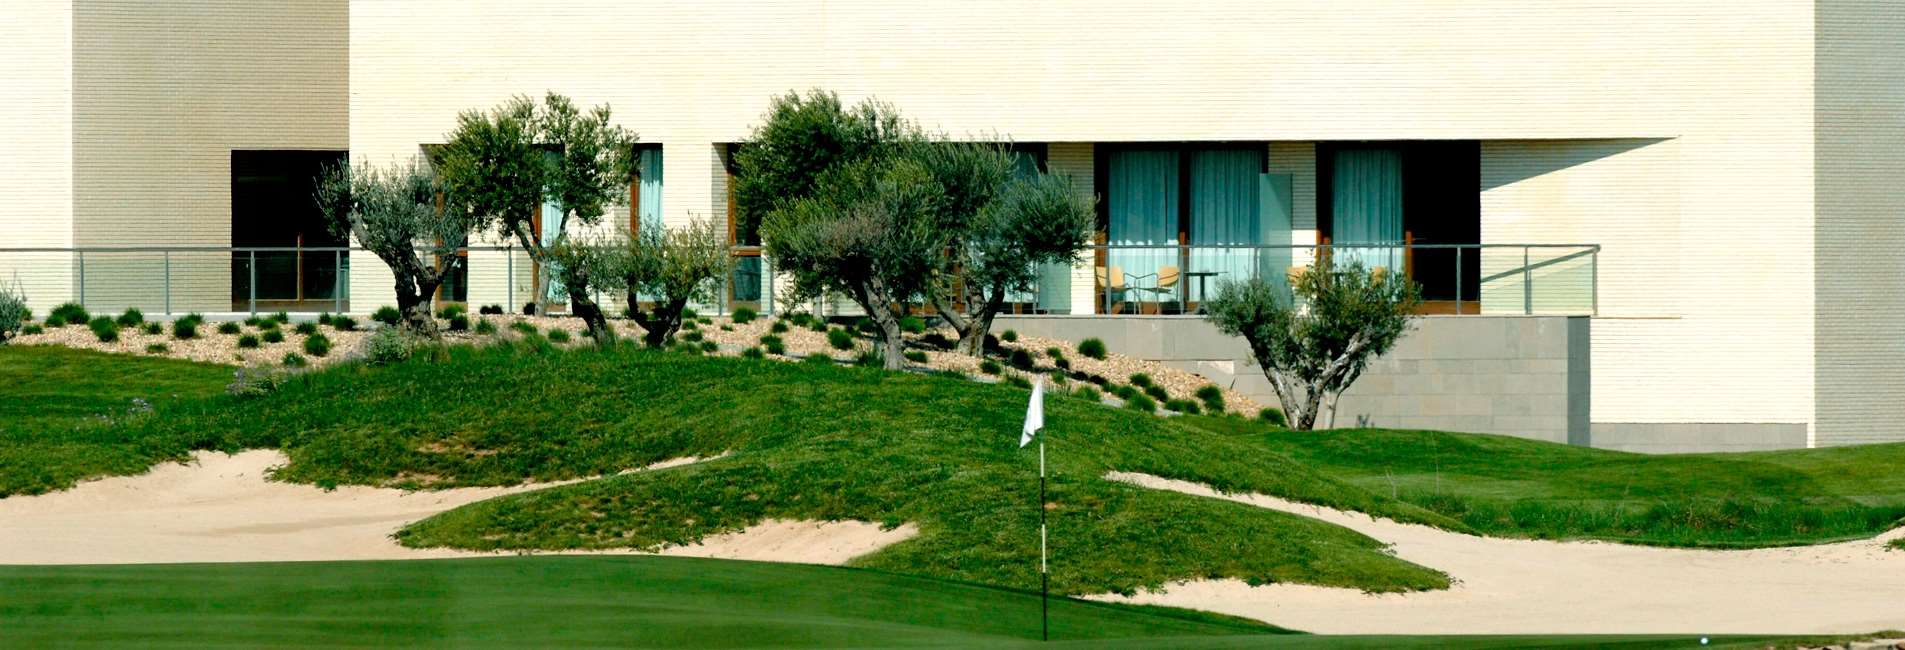 Sercotel Hotel Encin Golf